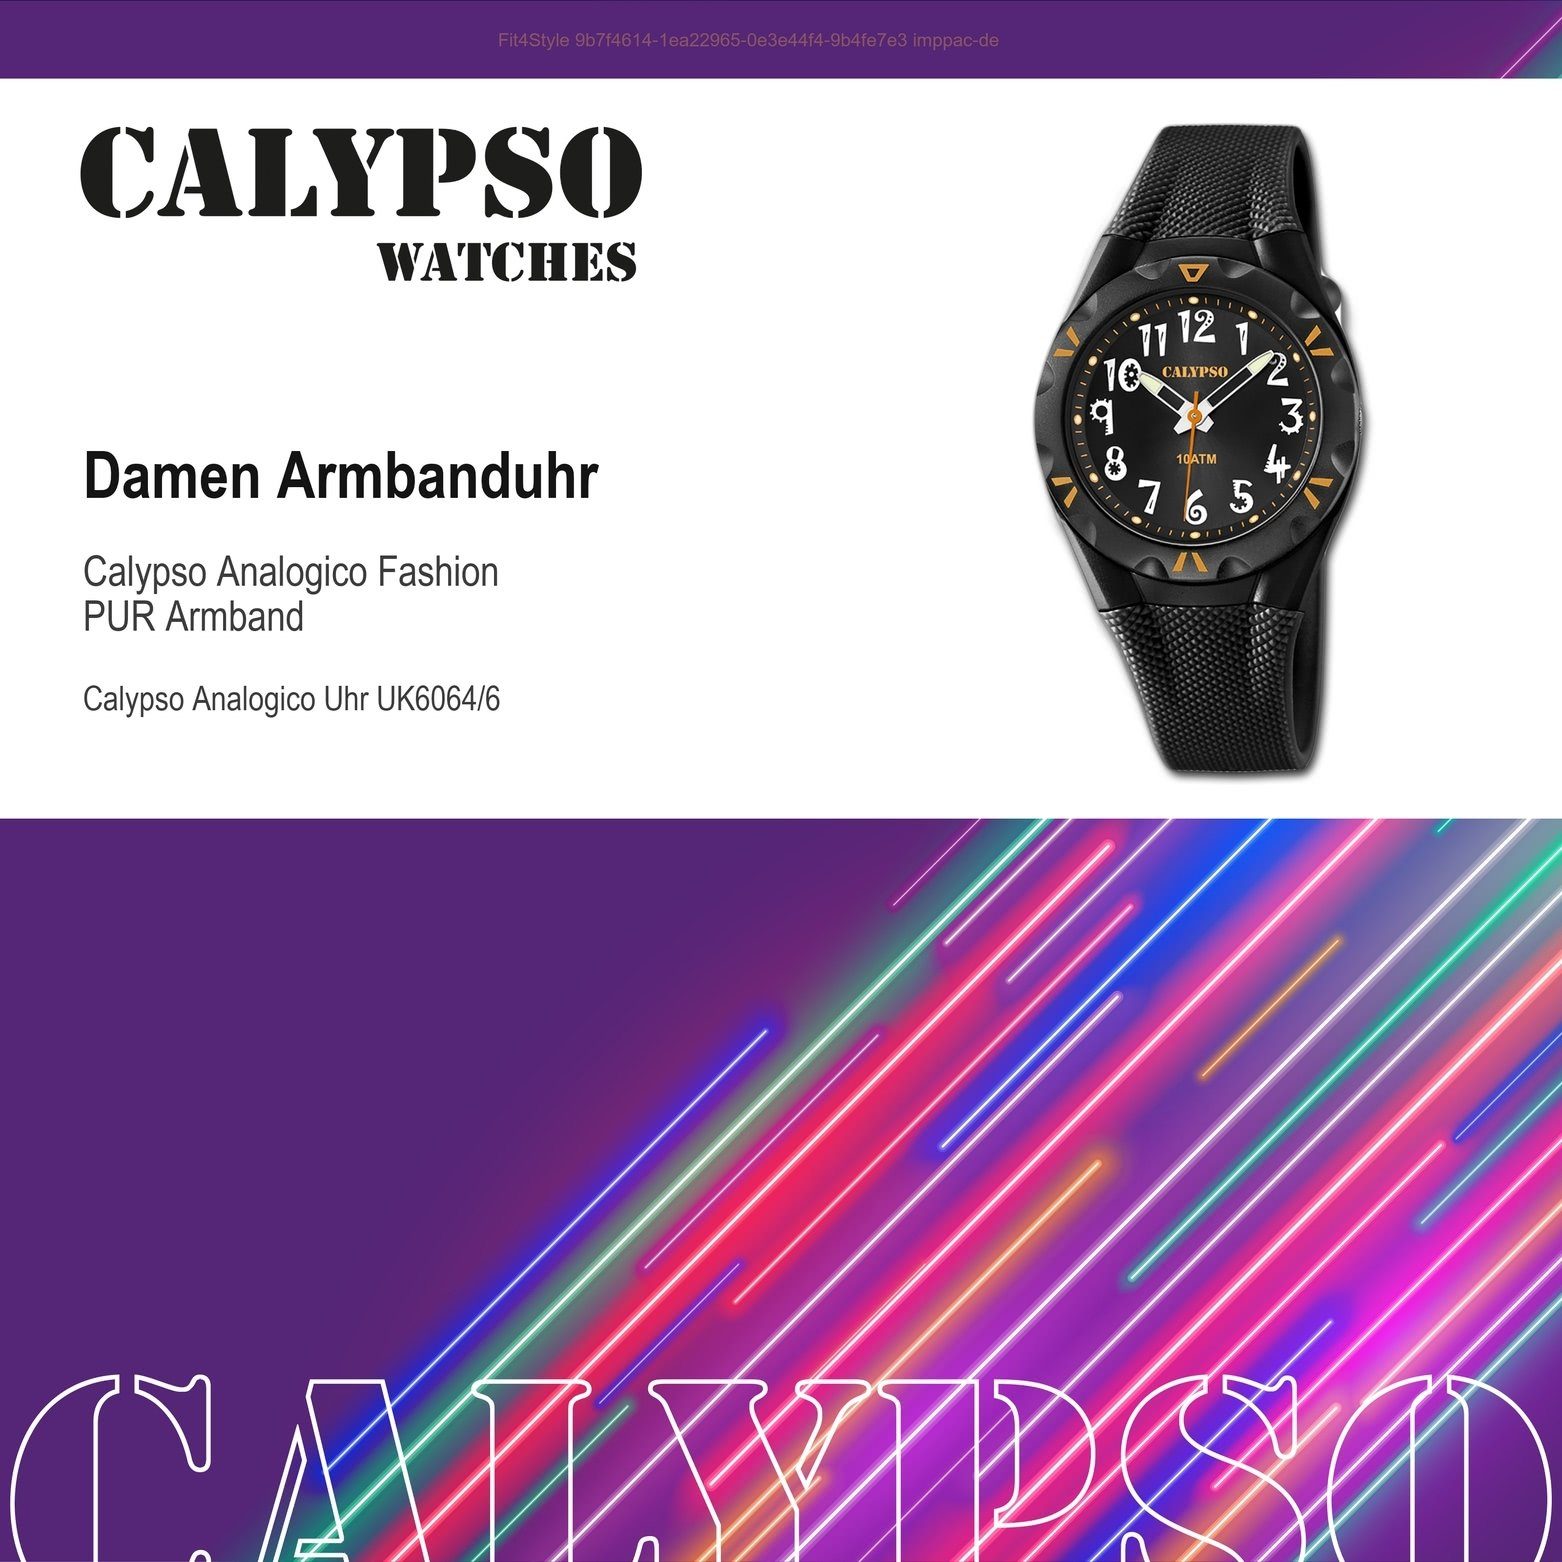 K6064/6 Damen CALYPSO PURarmband schwarz, WATCHES rund, Calypso Fashion Quarzuhr Kunststoffband, Damen Uhr Armbanduhr